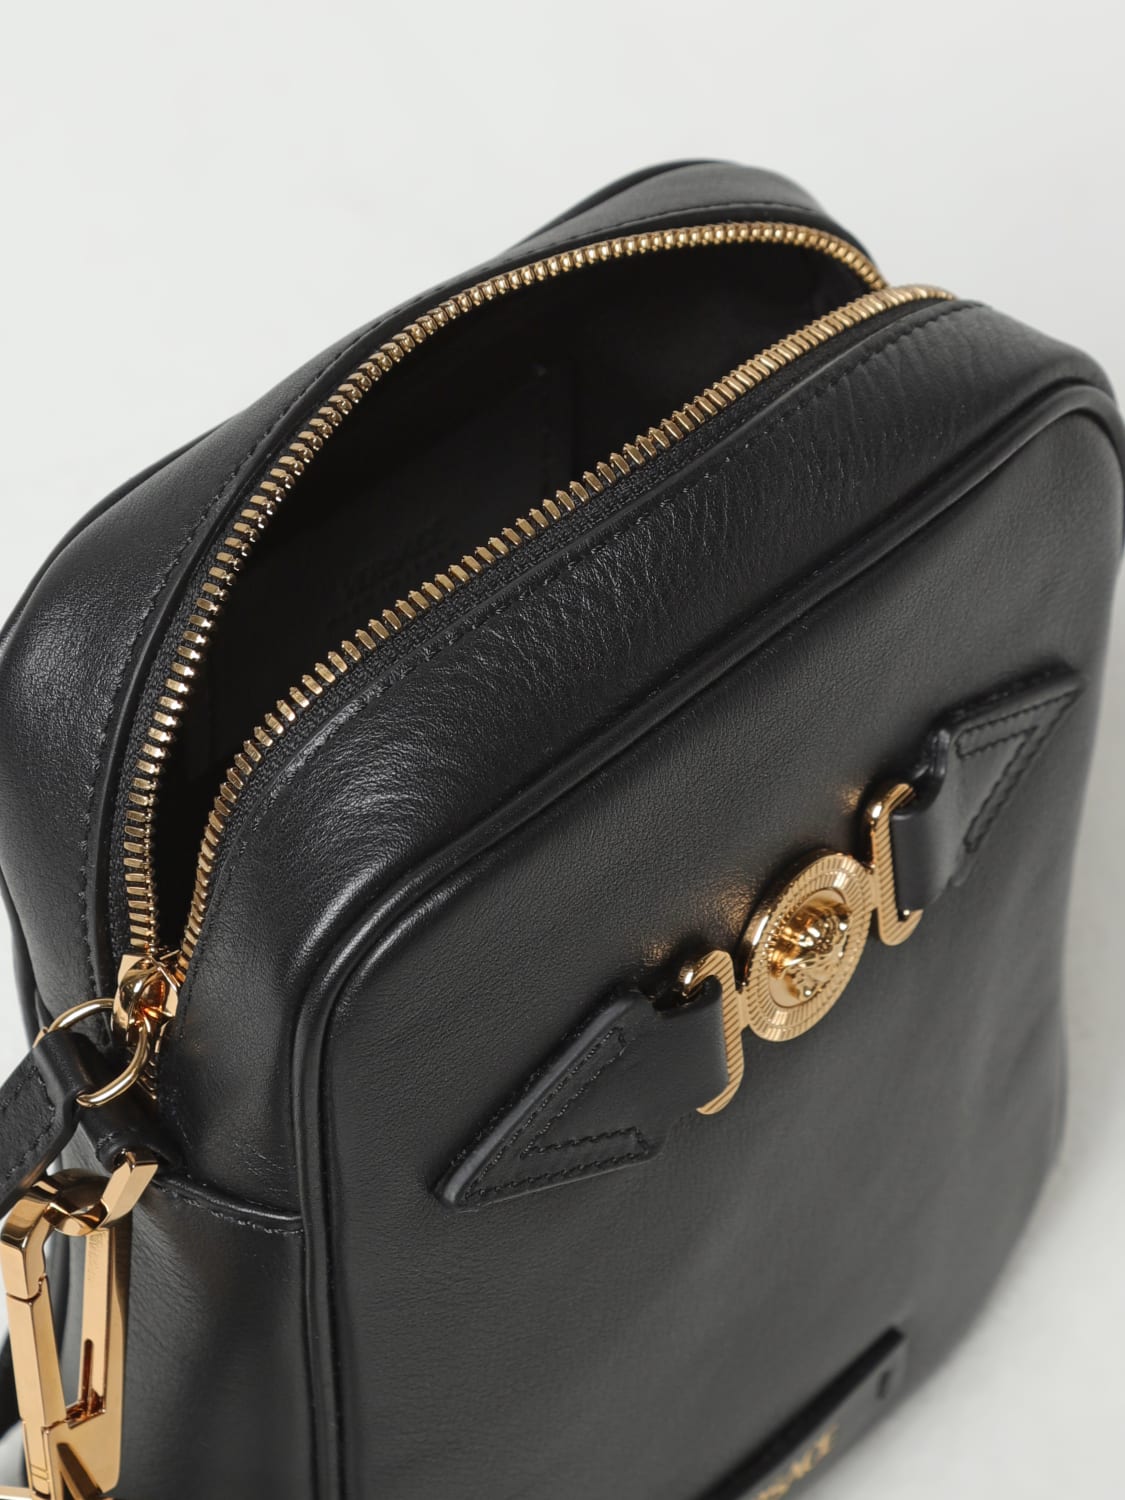 VERSACE: Medusa Biggie bag in leather - Black  Versace shoulder bag  10007211A03190 online at